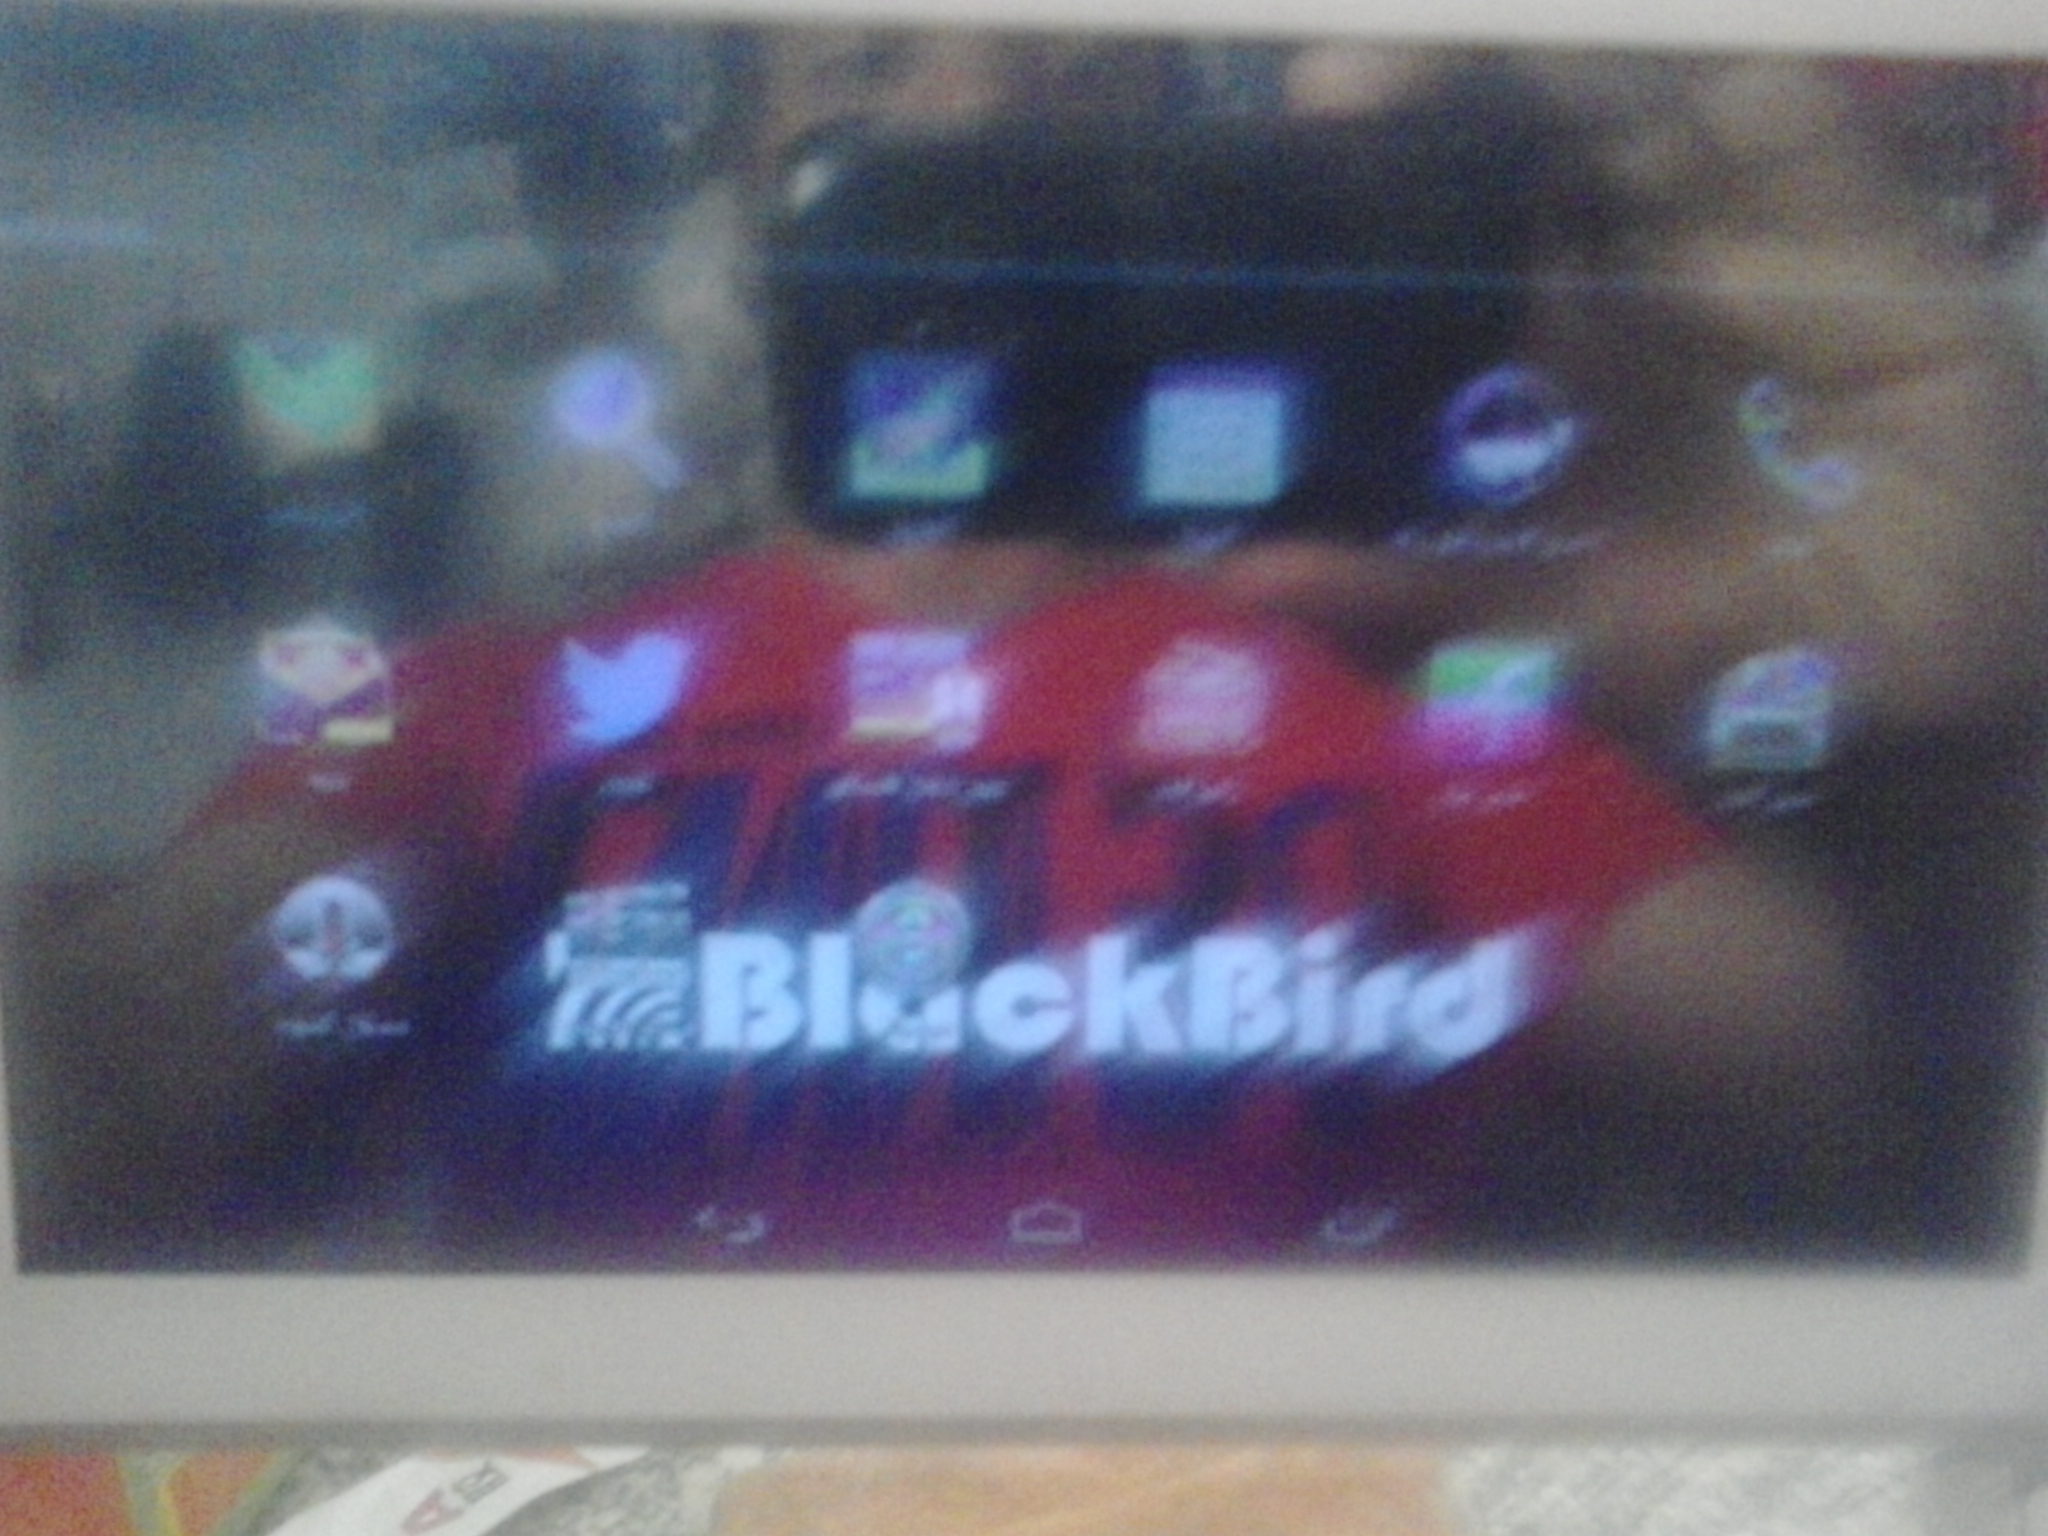  BlackBird  i7100